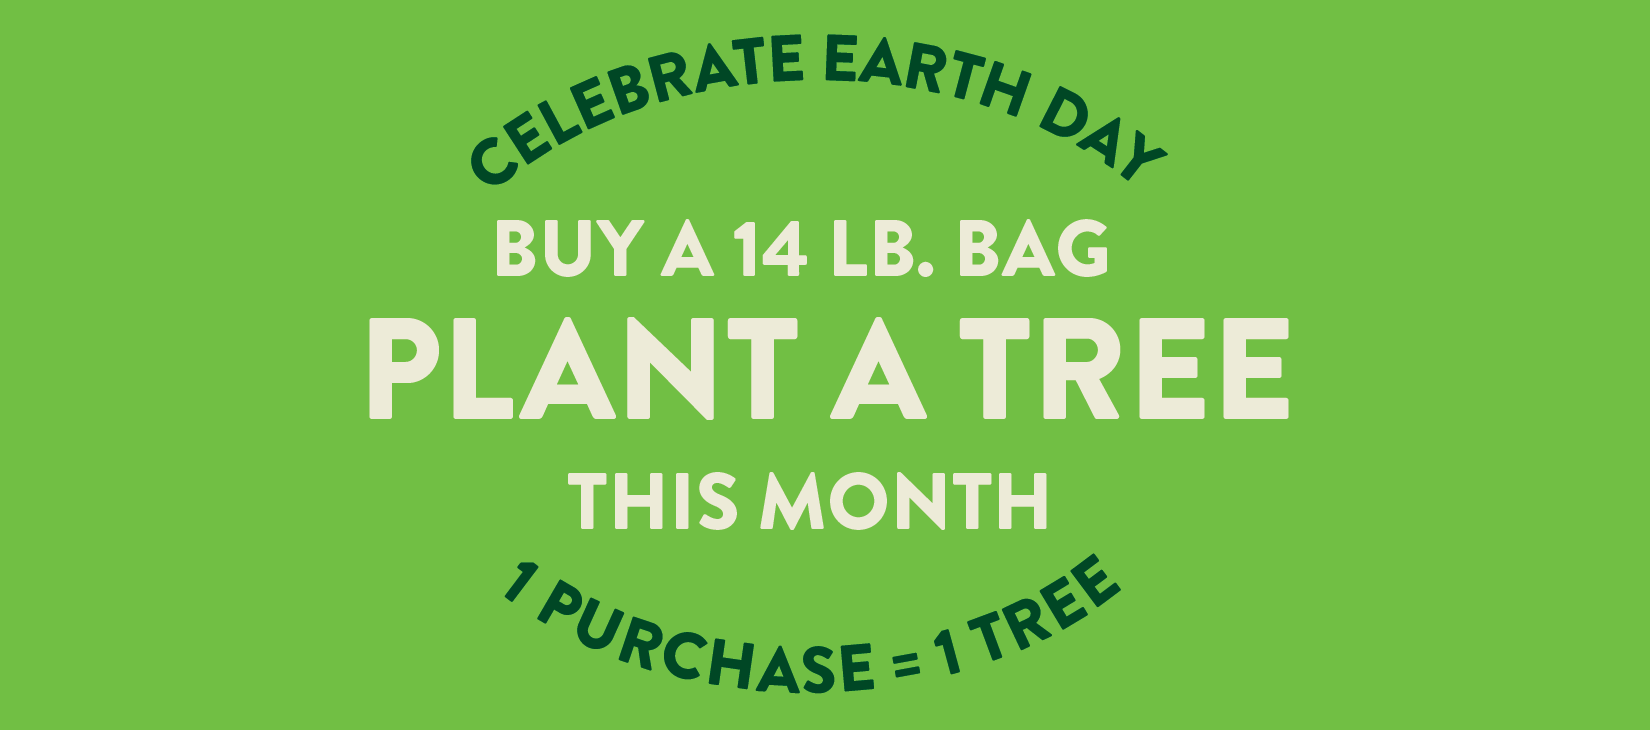 buy a 14lb bag, plant a tree